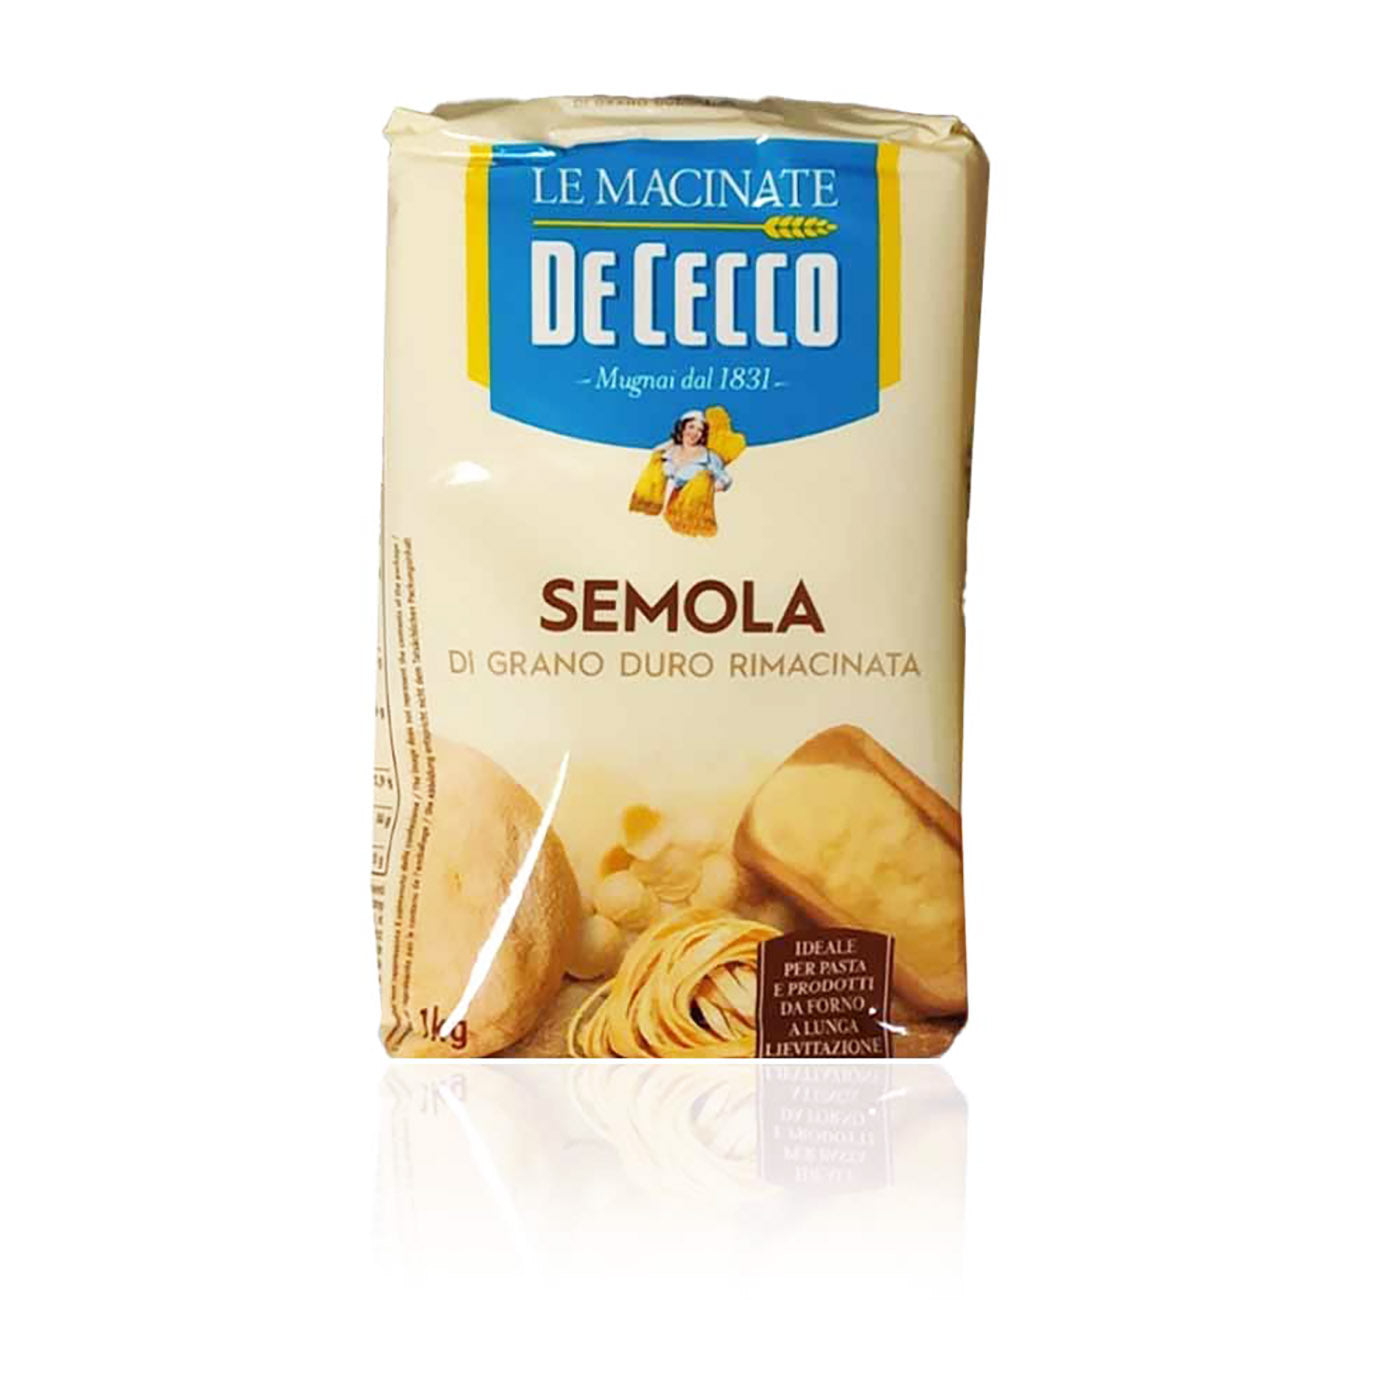 DE CECCO - Semola - 1kg